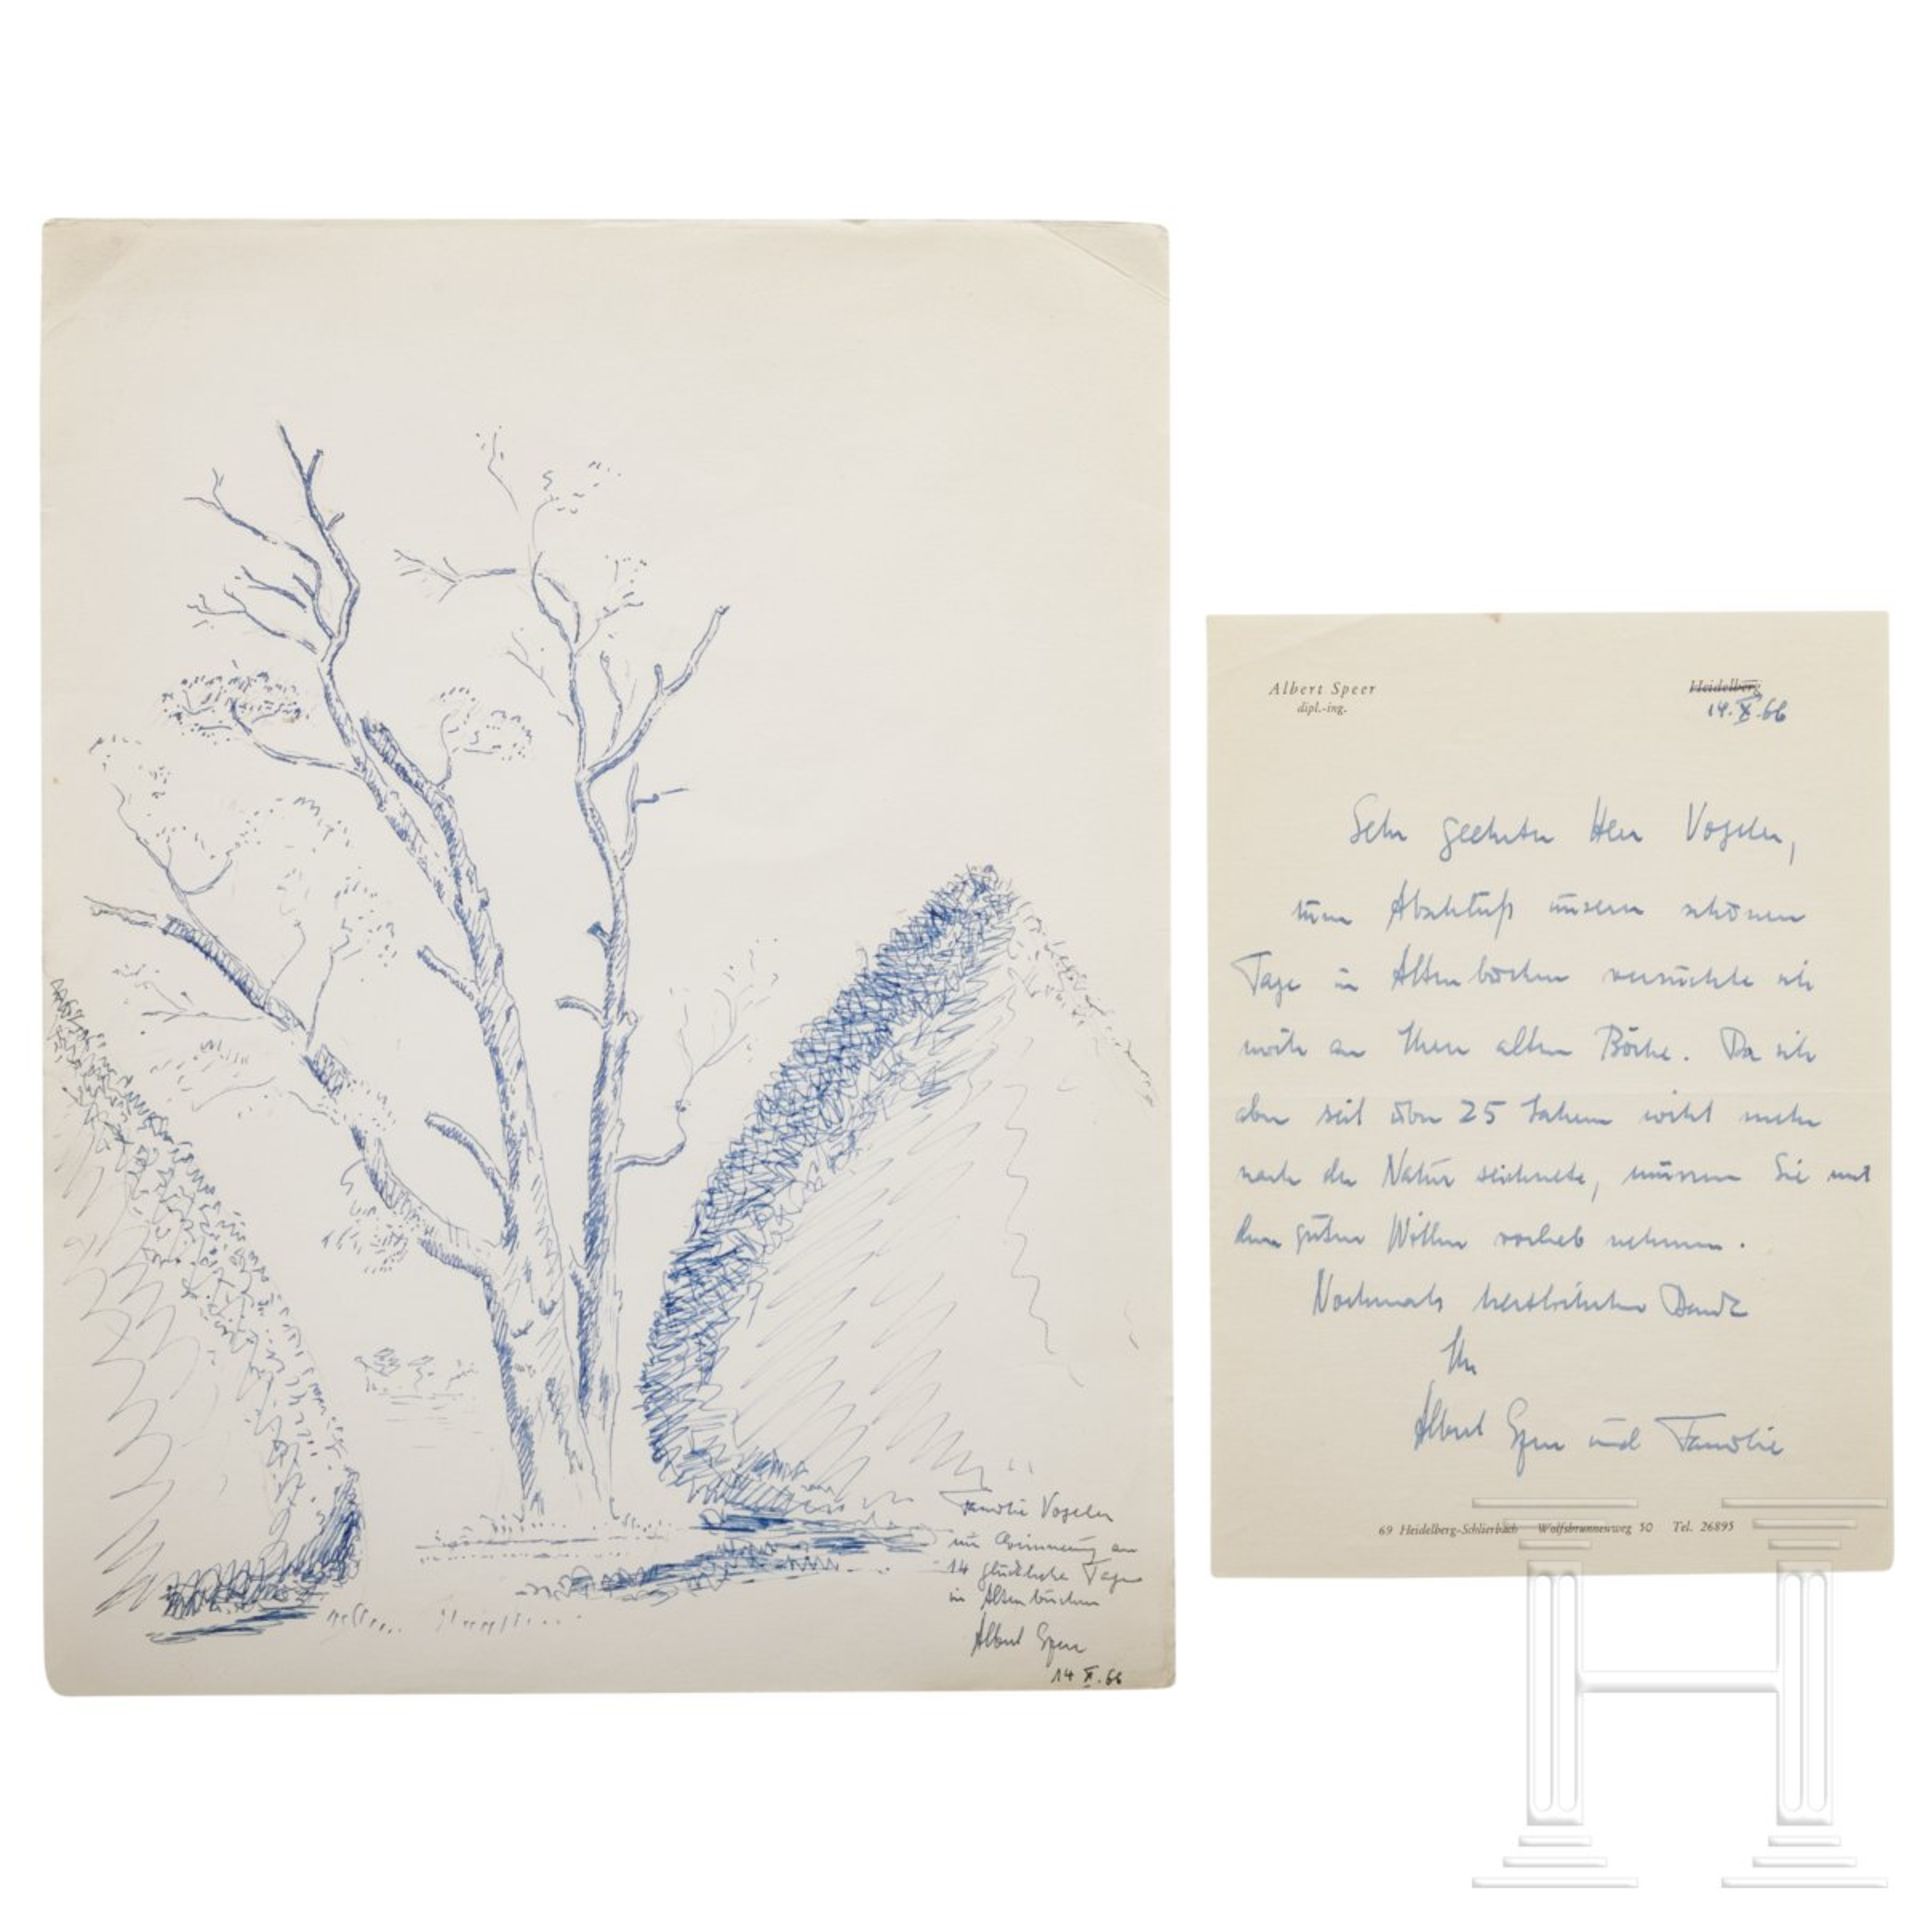 Albert Speer (1905 - 1981) - Zeichnung und Brief aus dem Jahre 1966